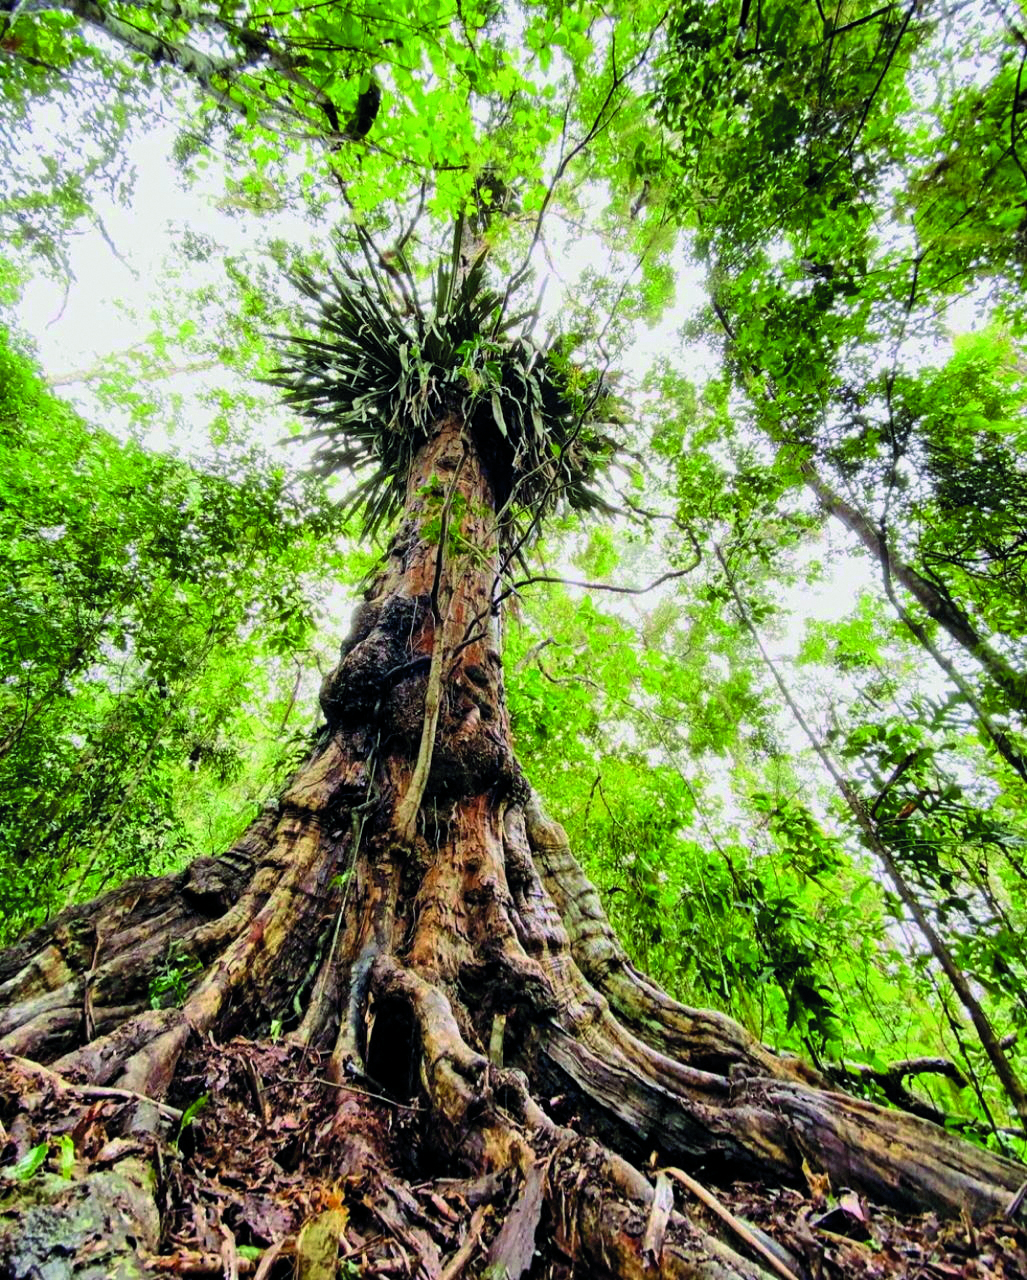 Fotografia. Árvore vista de baixo, com tronco alto e muitas raízes expostas. Seu tronco possui alguns espinhos. No alto, aparecem as copas das outras árvores.